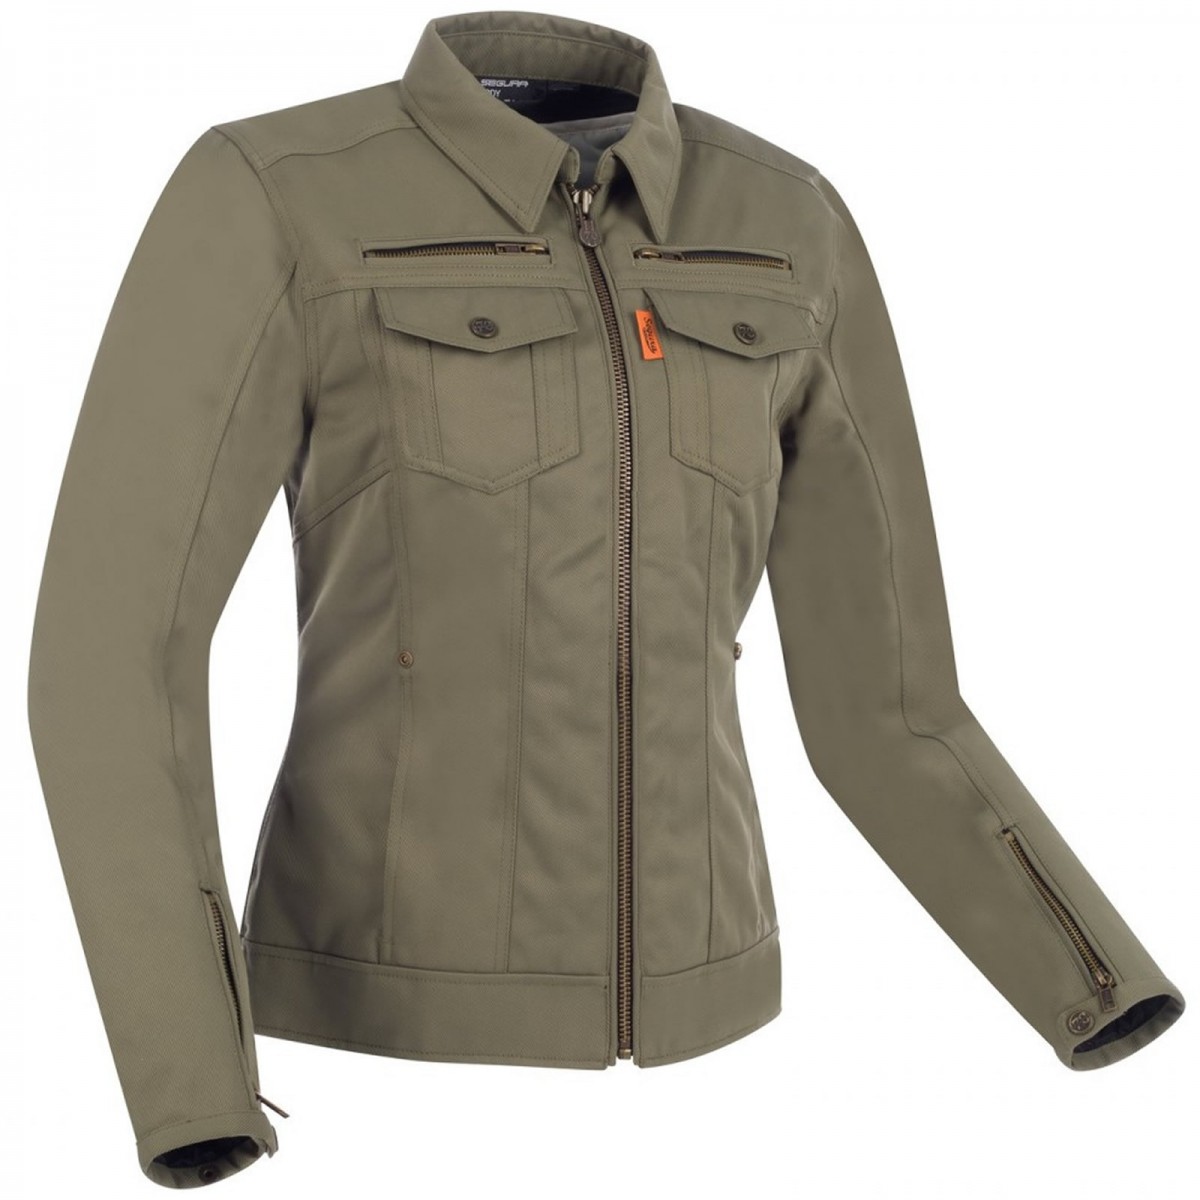 Image of Segura Lady Patrol Jacket Khaki Size T5 ID 3660815163214